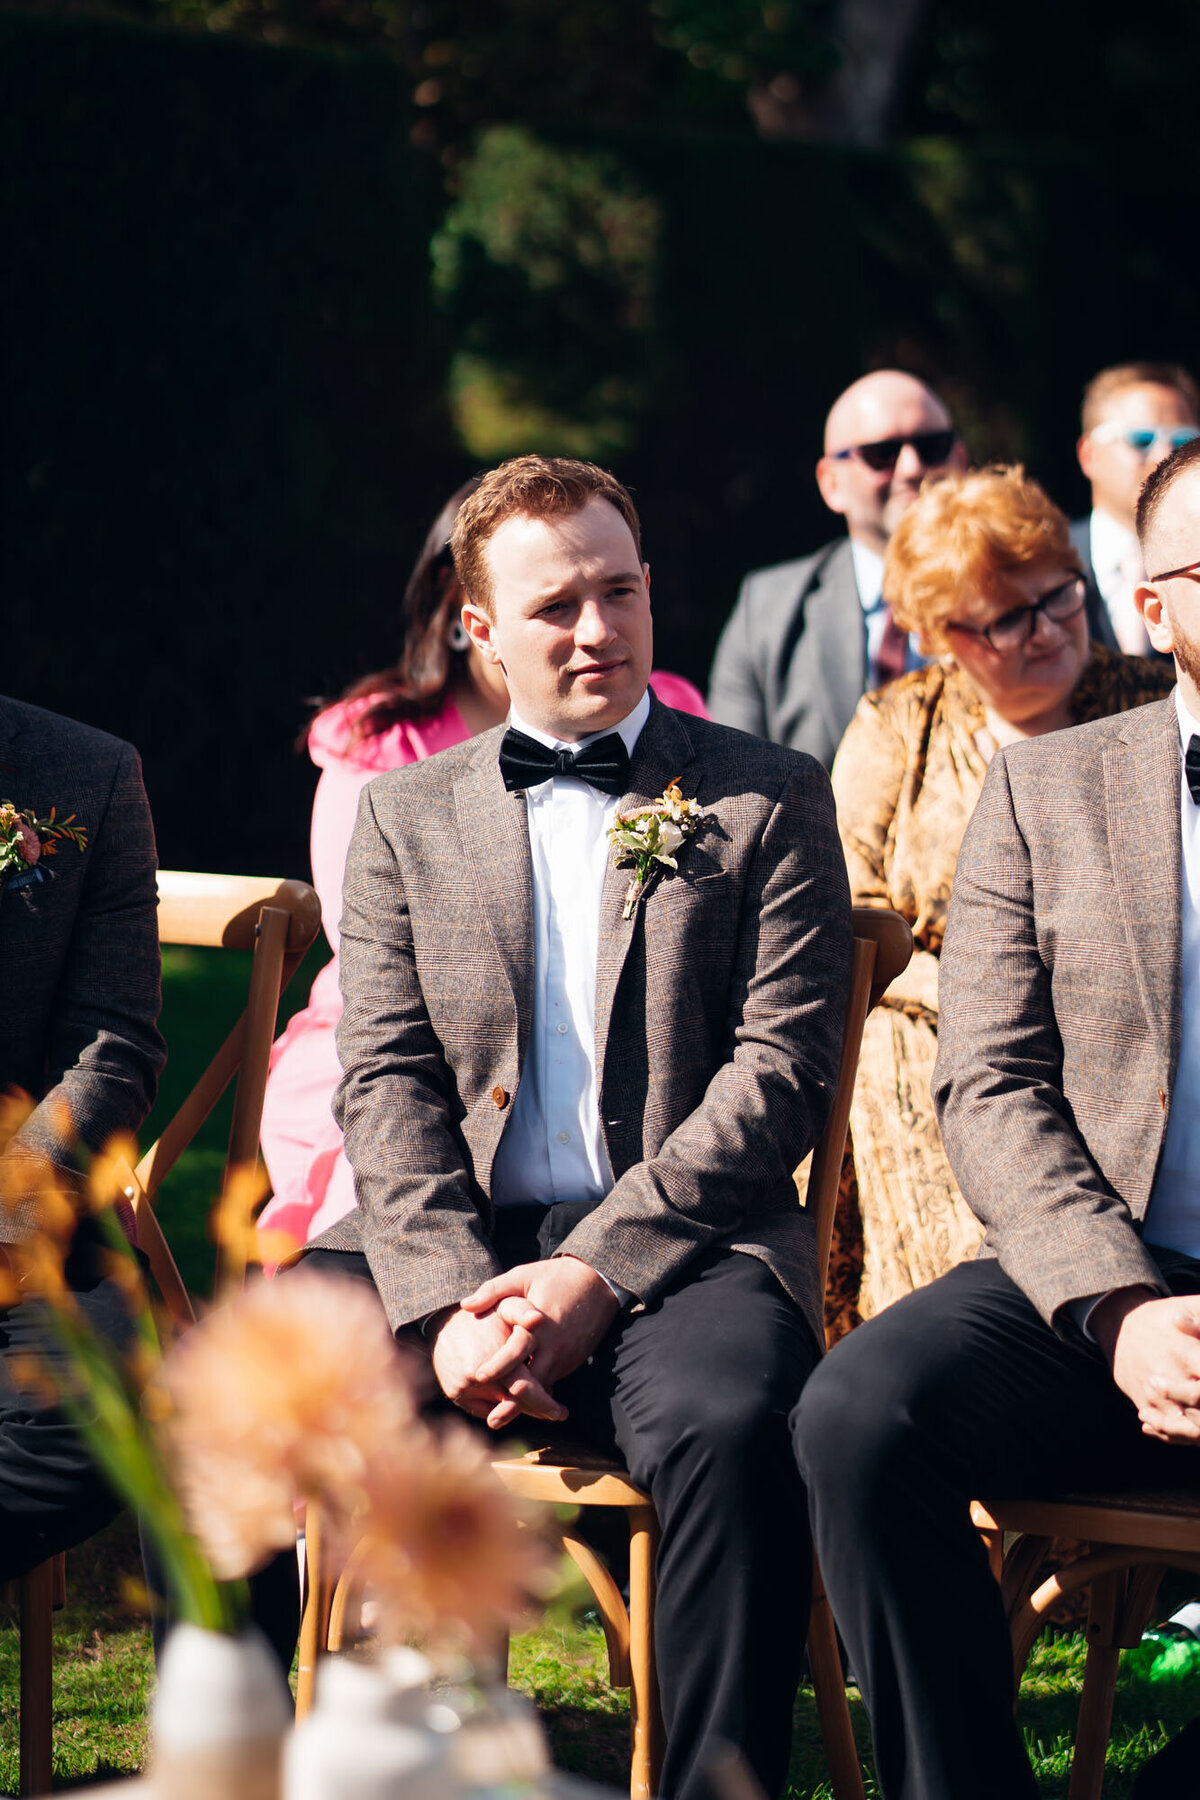 Pauntley-court-wedding-photographer-groomsmen-during-outdoor-ceremony